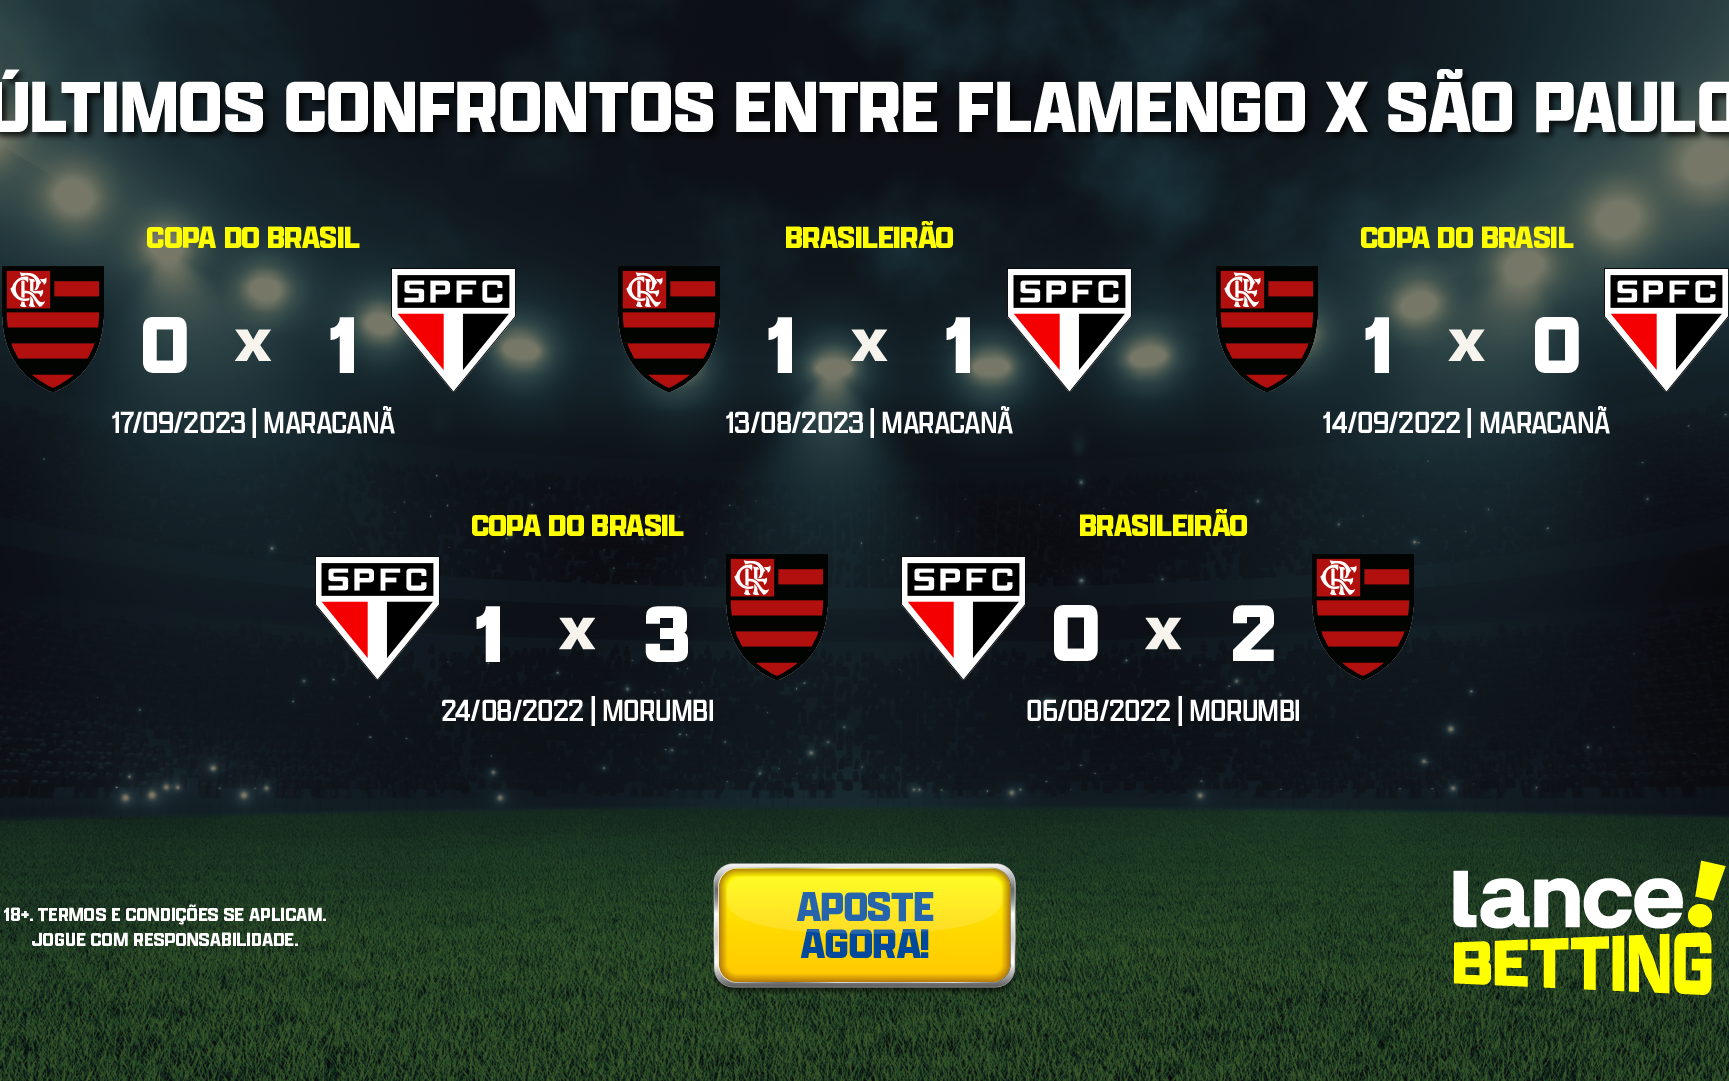 Confira como foi a transmissão da JP do jogo entre Flamengo e São